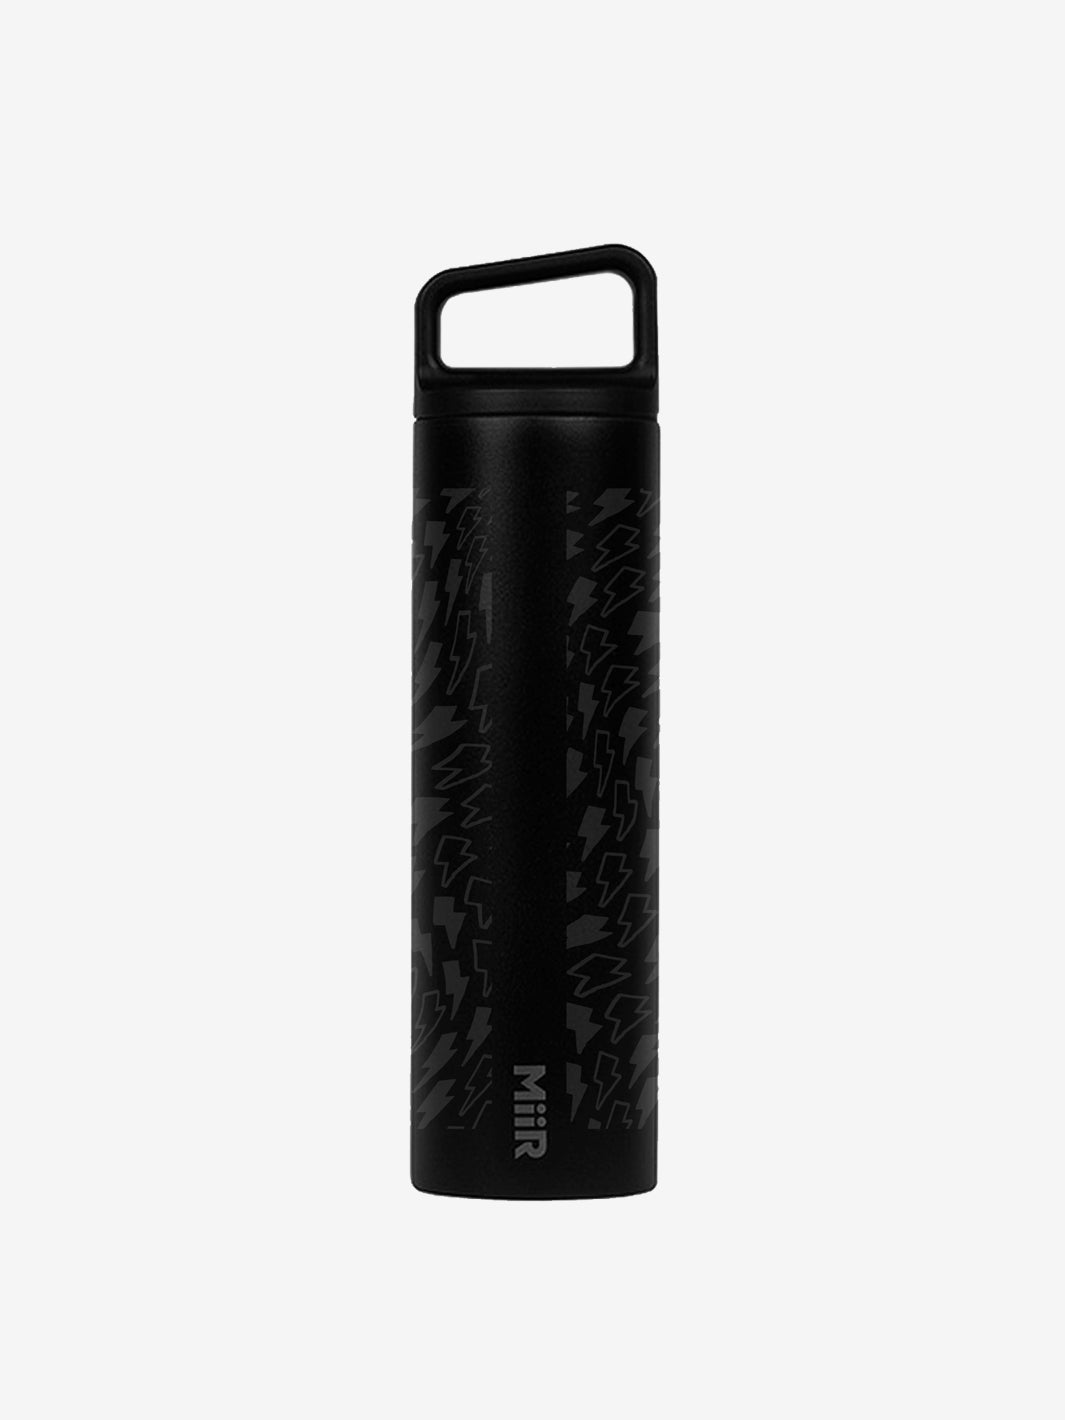 MIIR Black Stainless steel water bottle